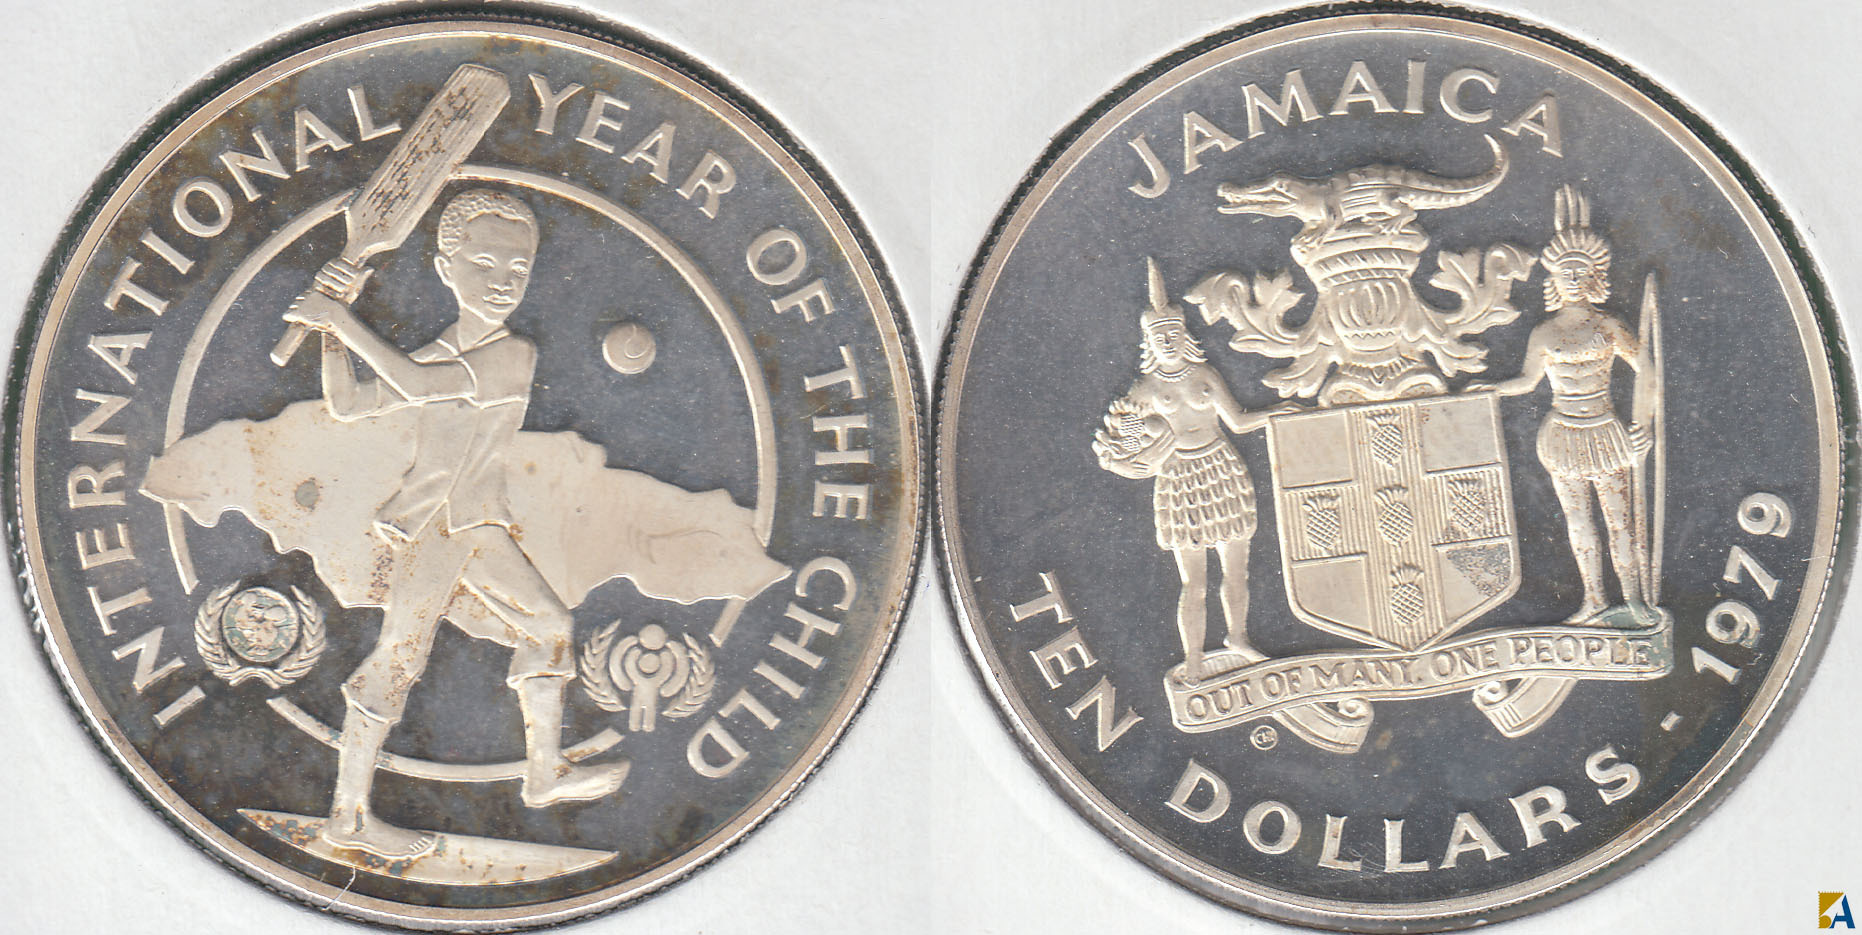 JAMAICA. 10 DOLARES (DOLLARS) DE 1979. PLATA 0.925.